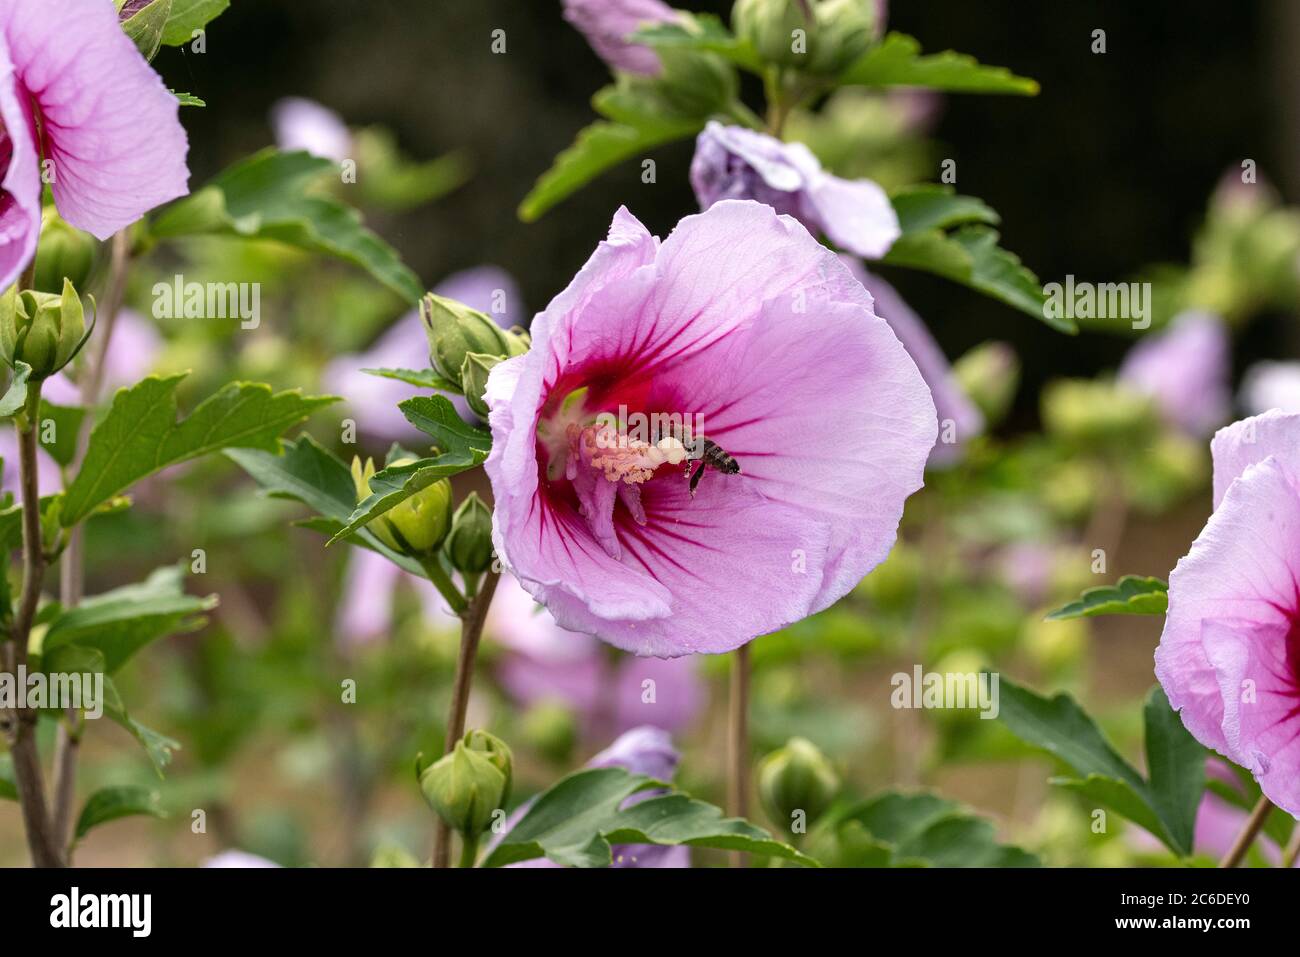 Garten-Eibisch, Hibiscus syriacus Mingravi4, Garden Hibiscus, Hibiscus syriacus Mingravi4 Stock Photo